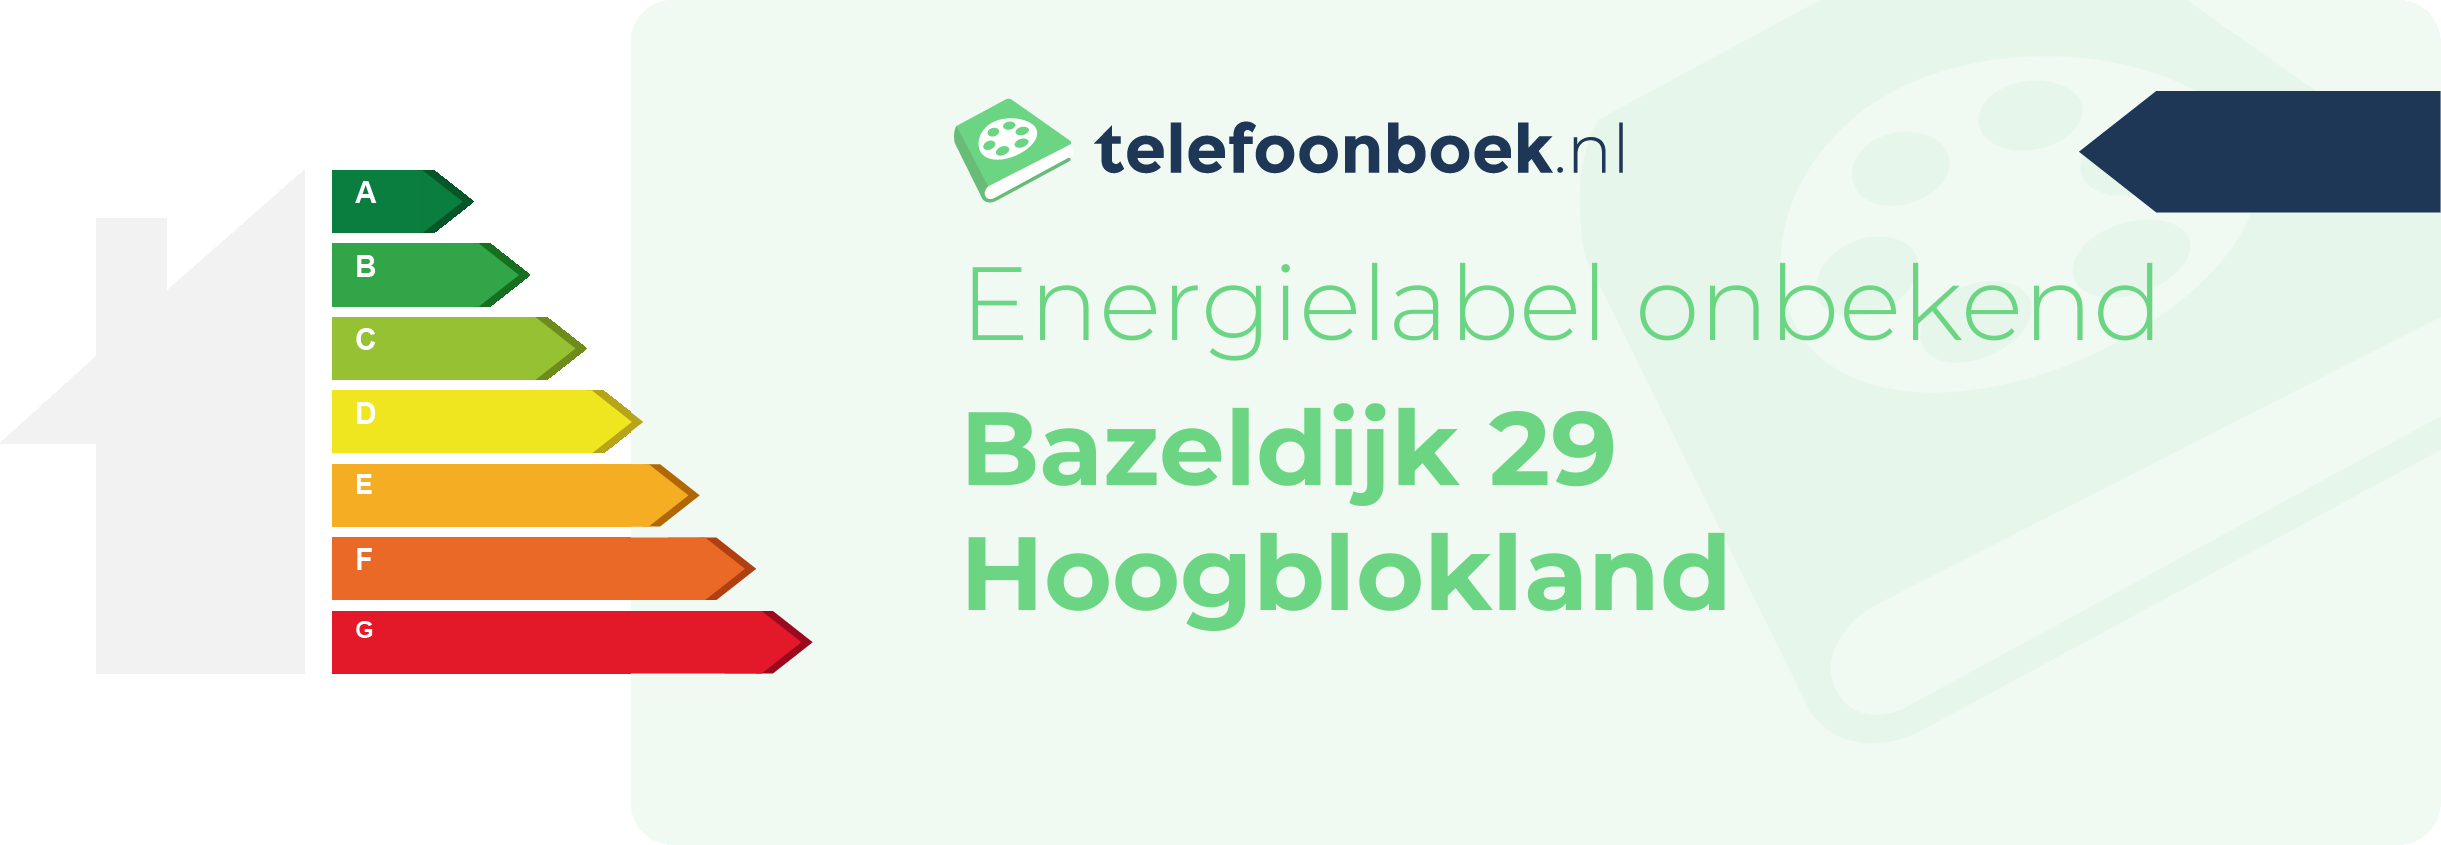 Energielabel Bazeldijk 29 Hoogblokland